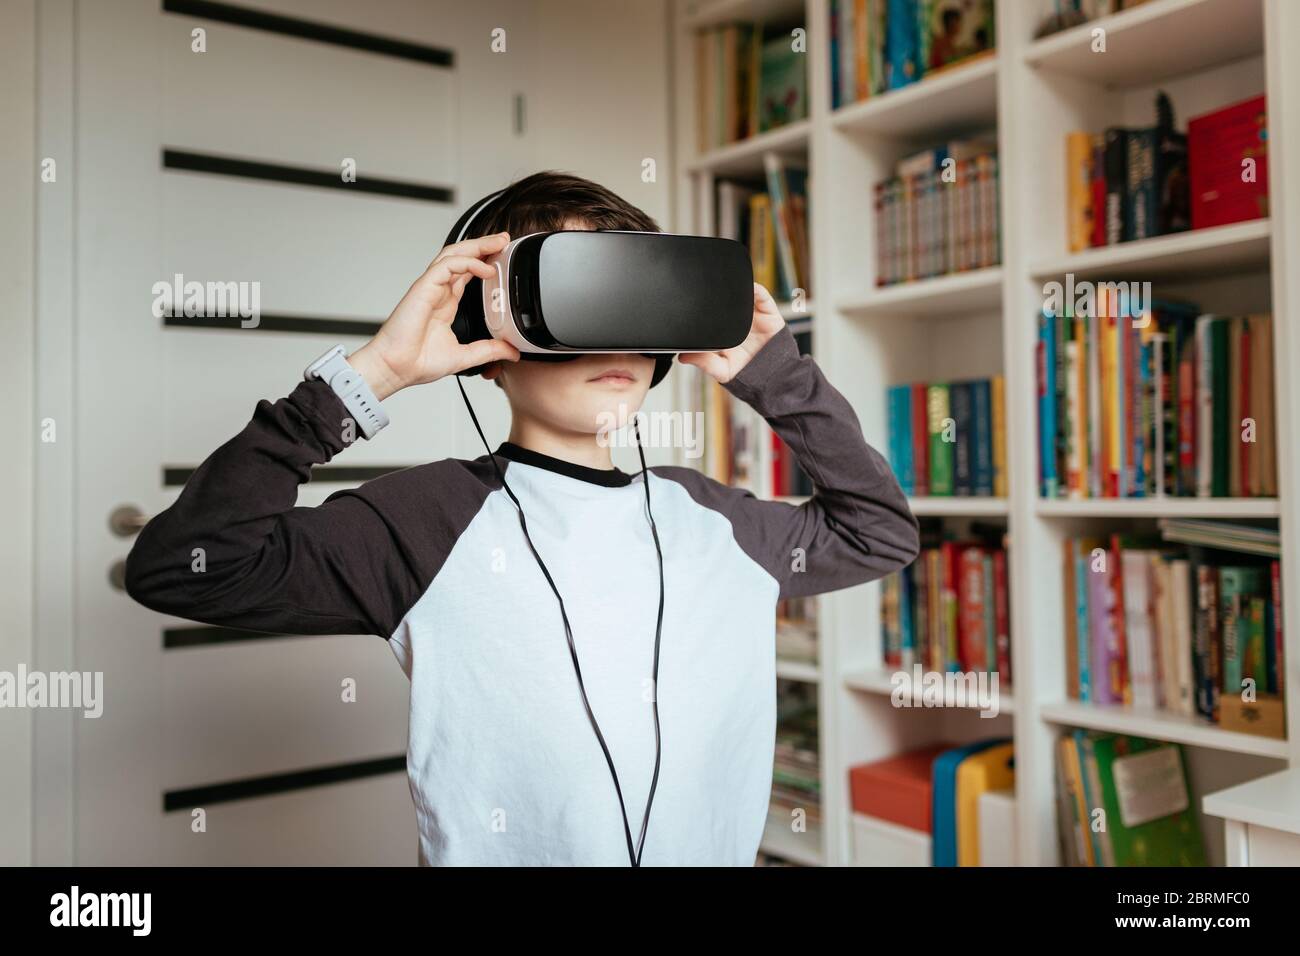 Garçon portant des lunettes VR avec casque. Photo moyenne d'un adolescent portant un casque de réalité virtuelle et touchant ce dernier. Banque D'Images